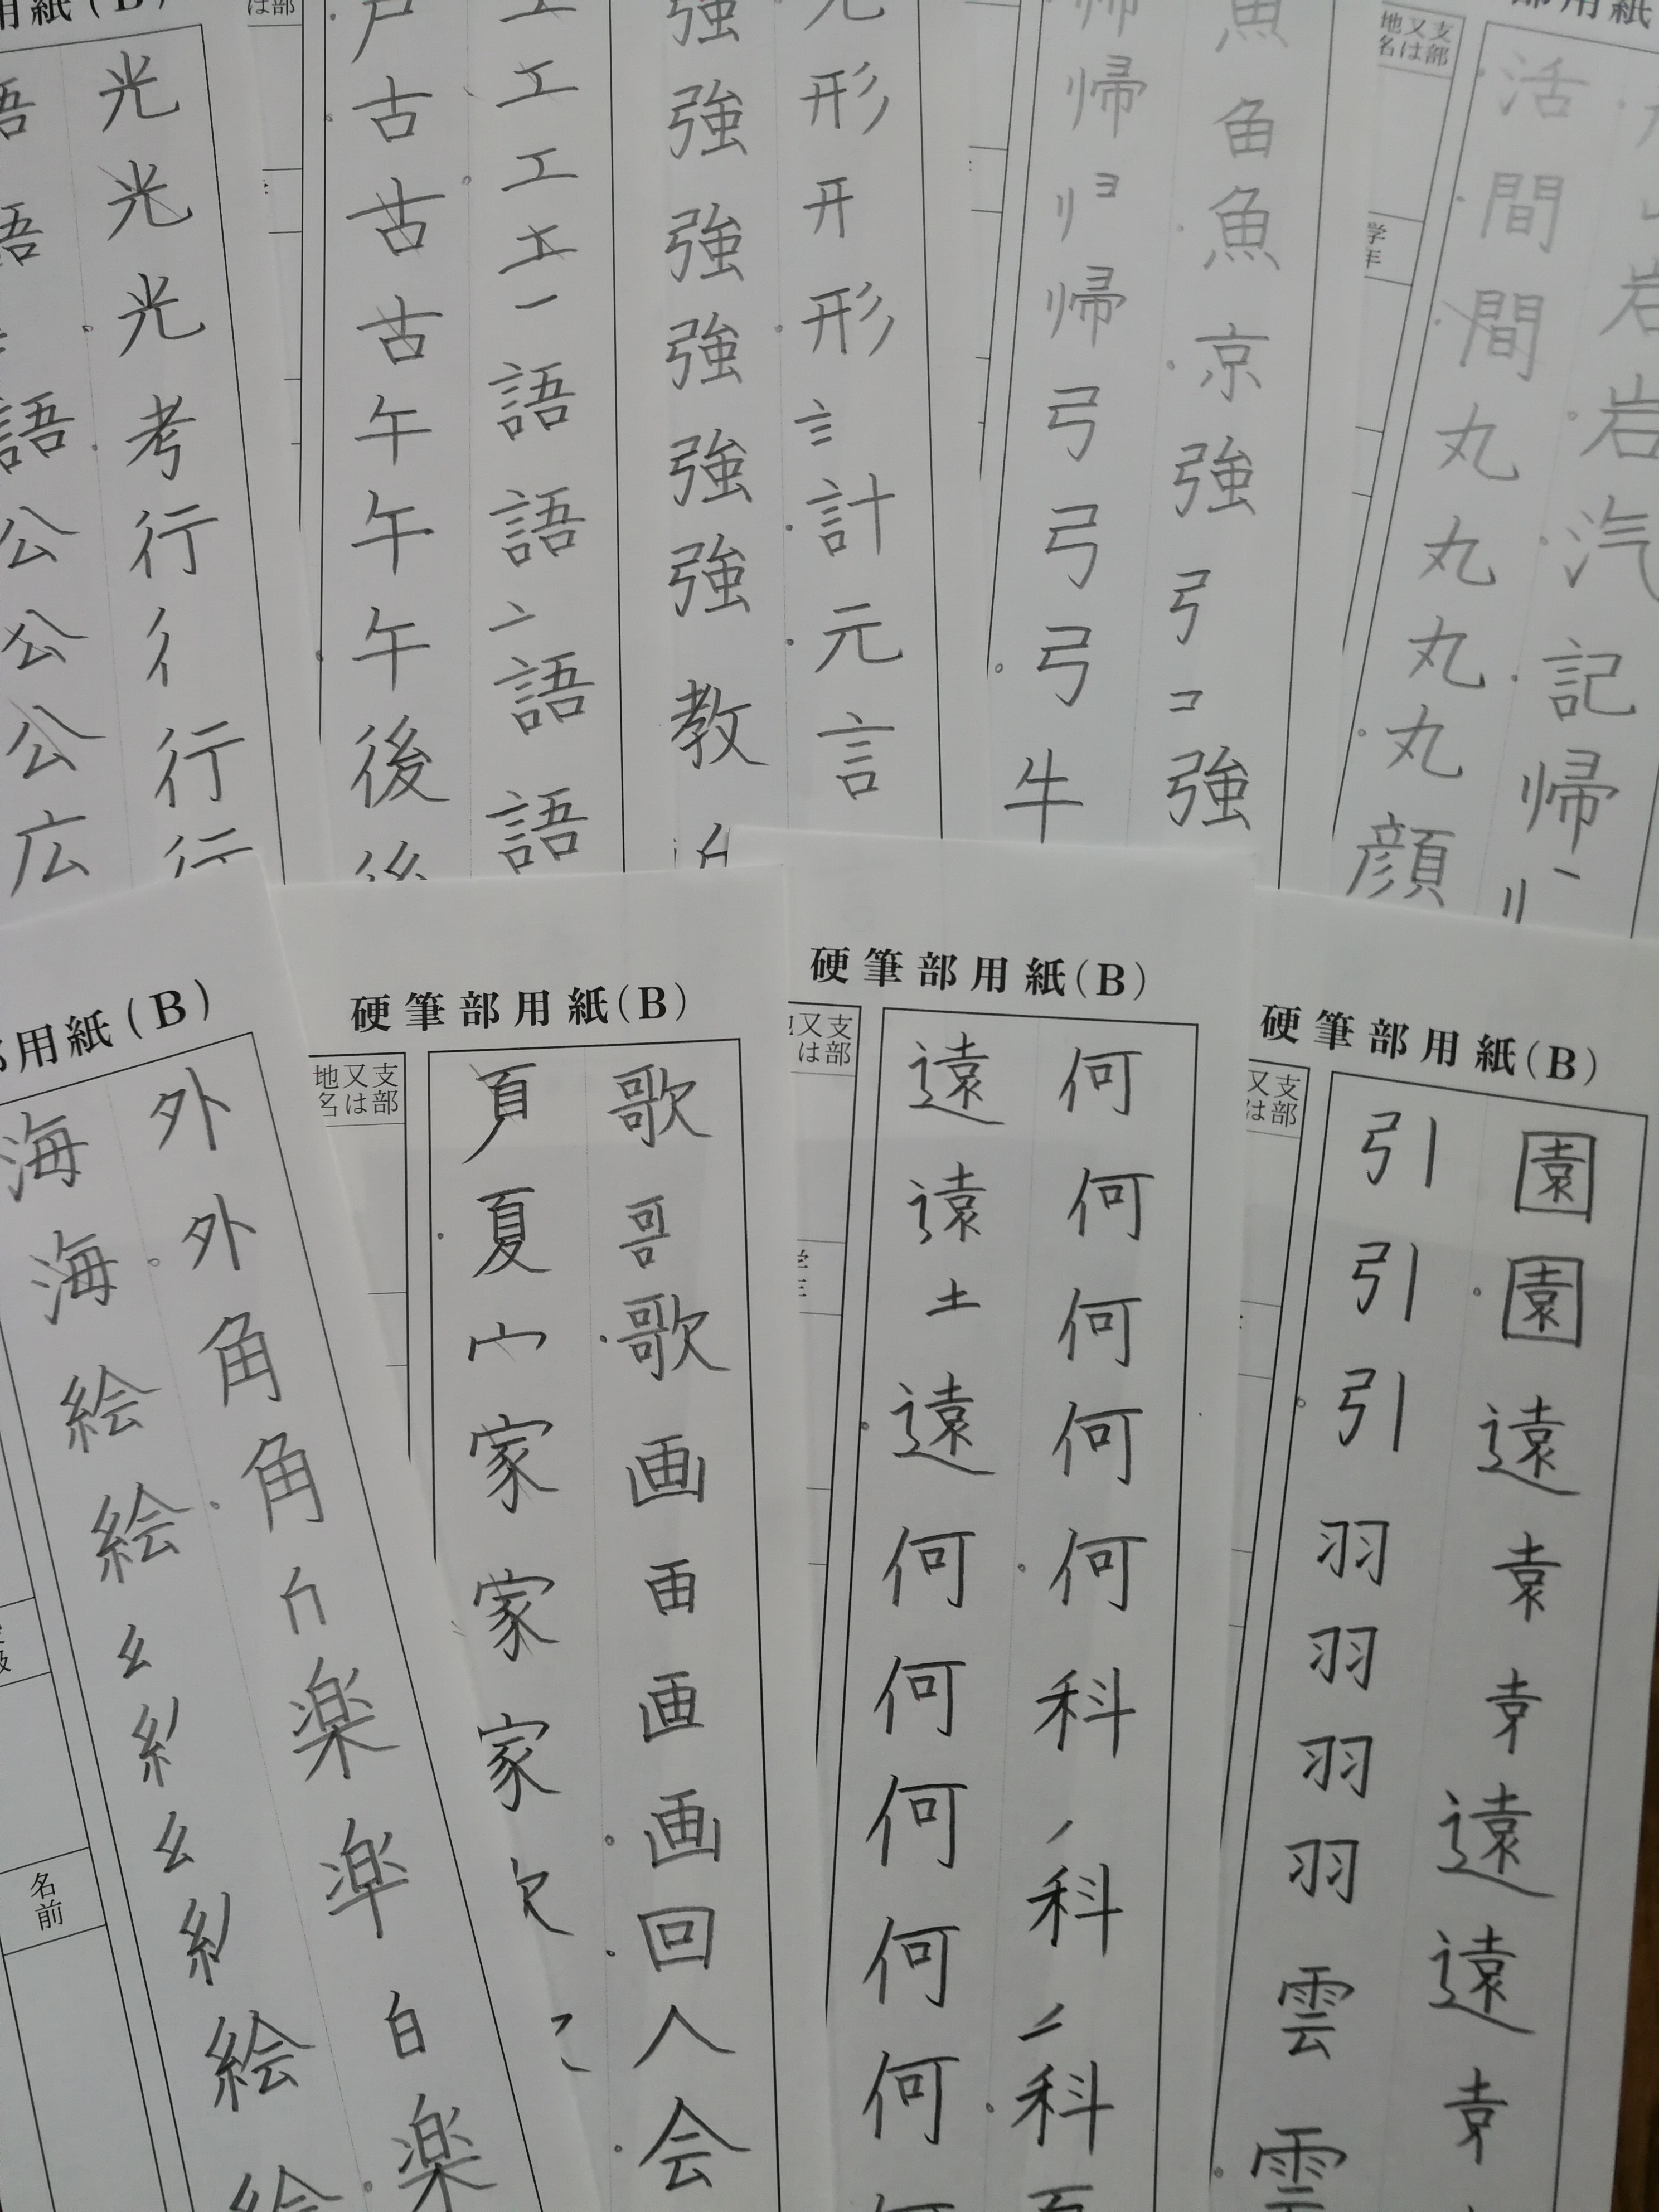 子どもたちの漢字のサポートをしたい。